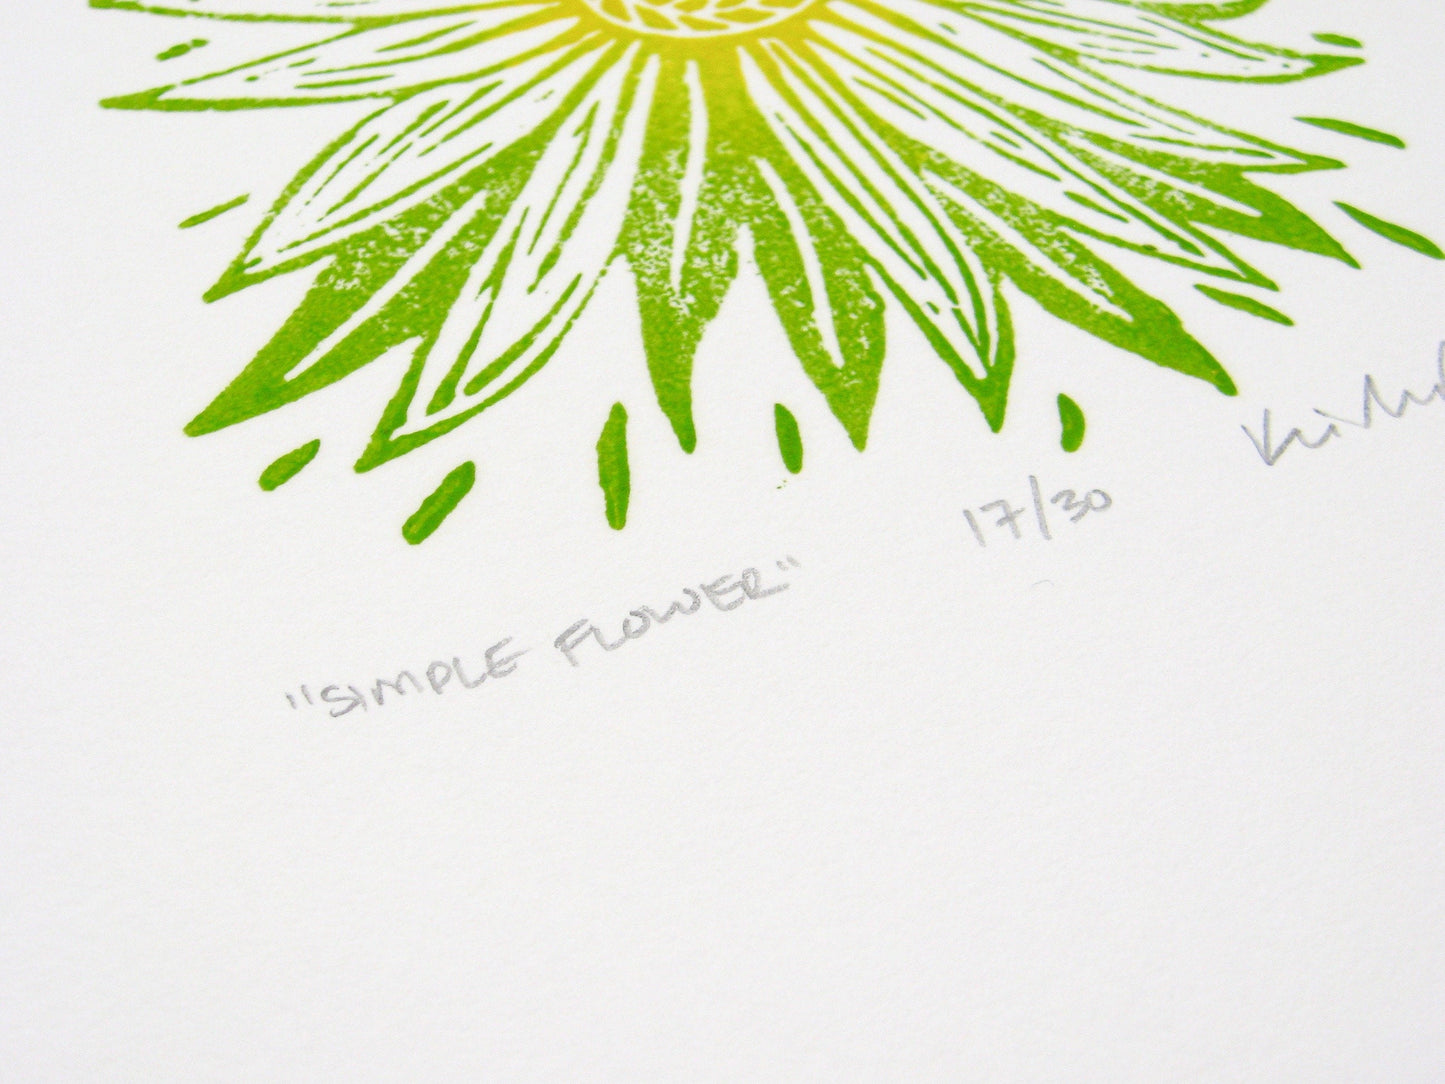 Simple Flower - woodblock print (8x8")